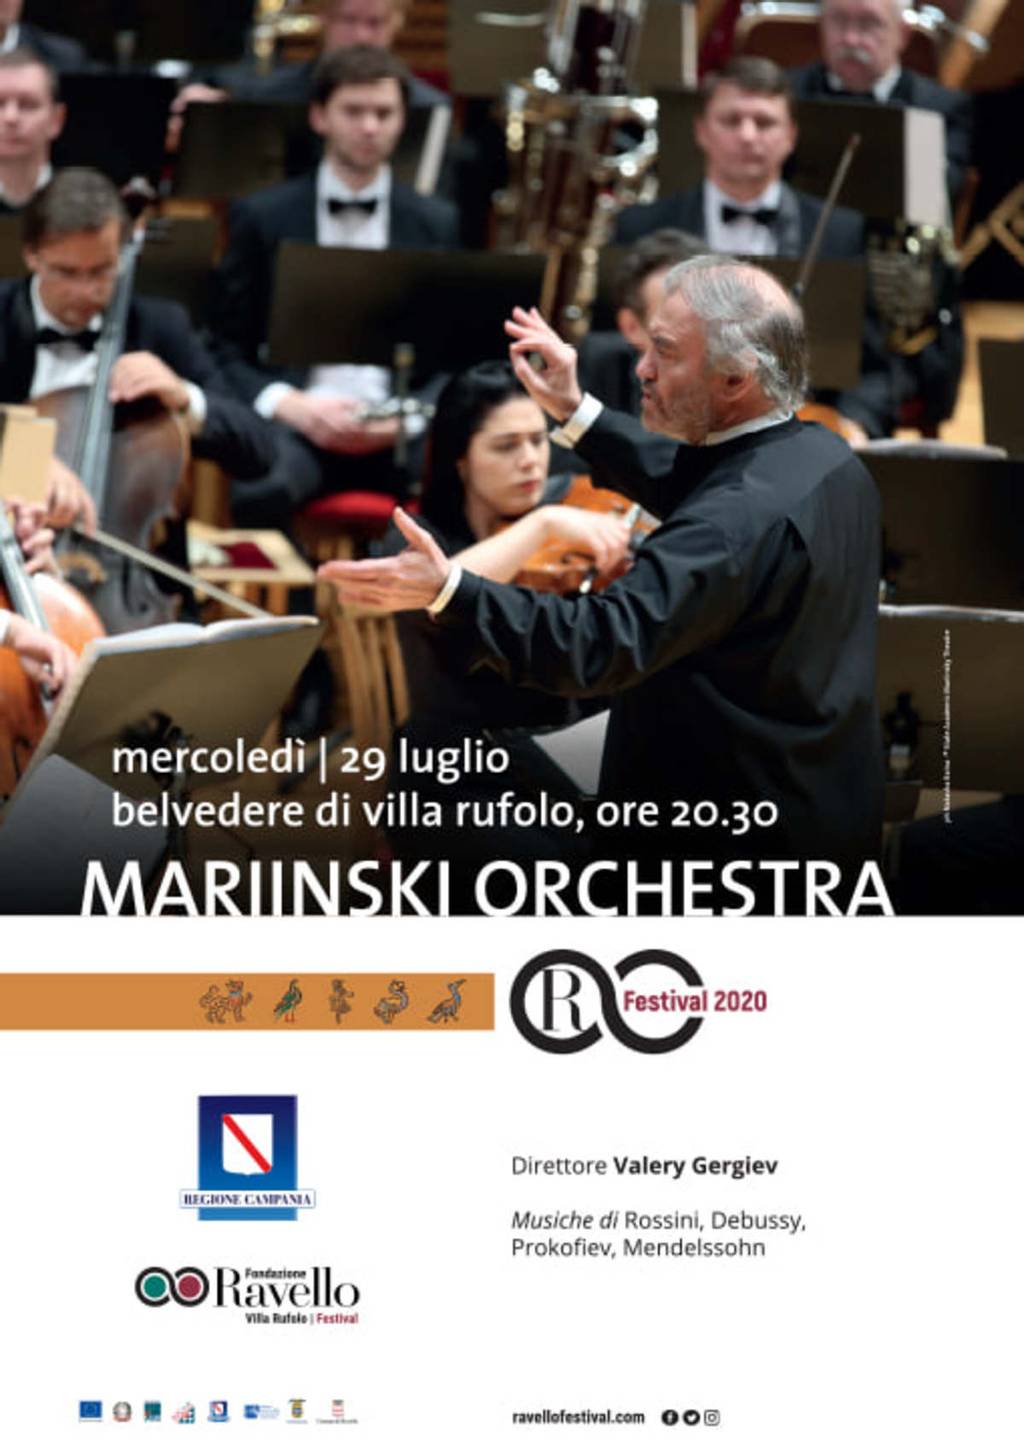 Mariinski Orchestra